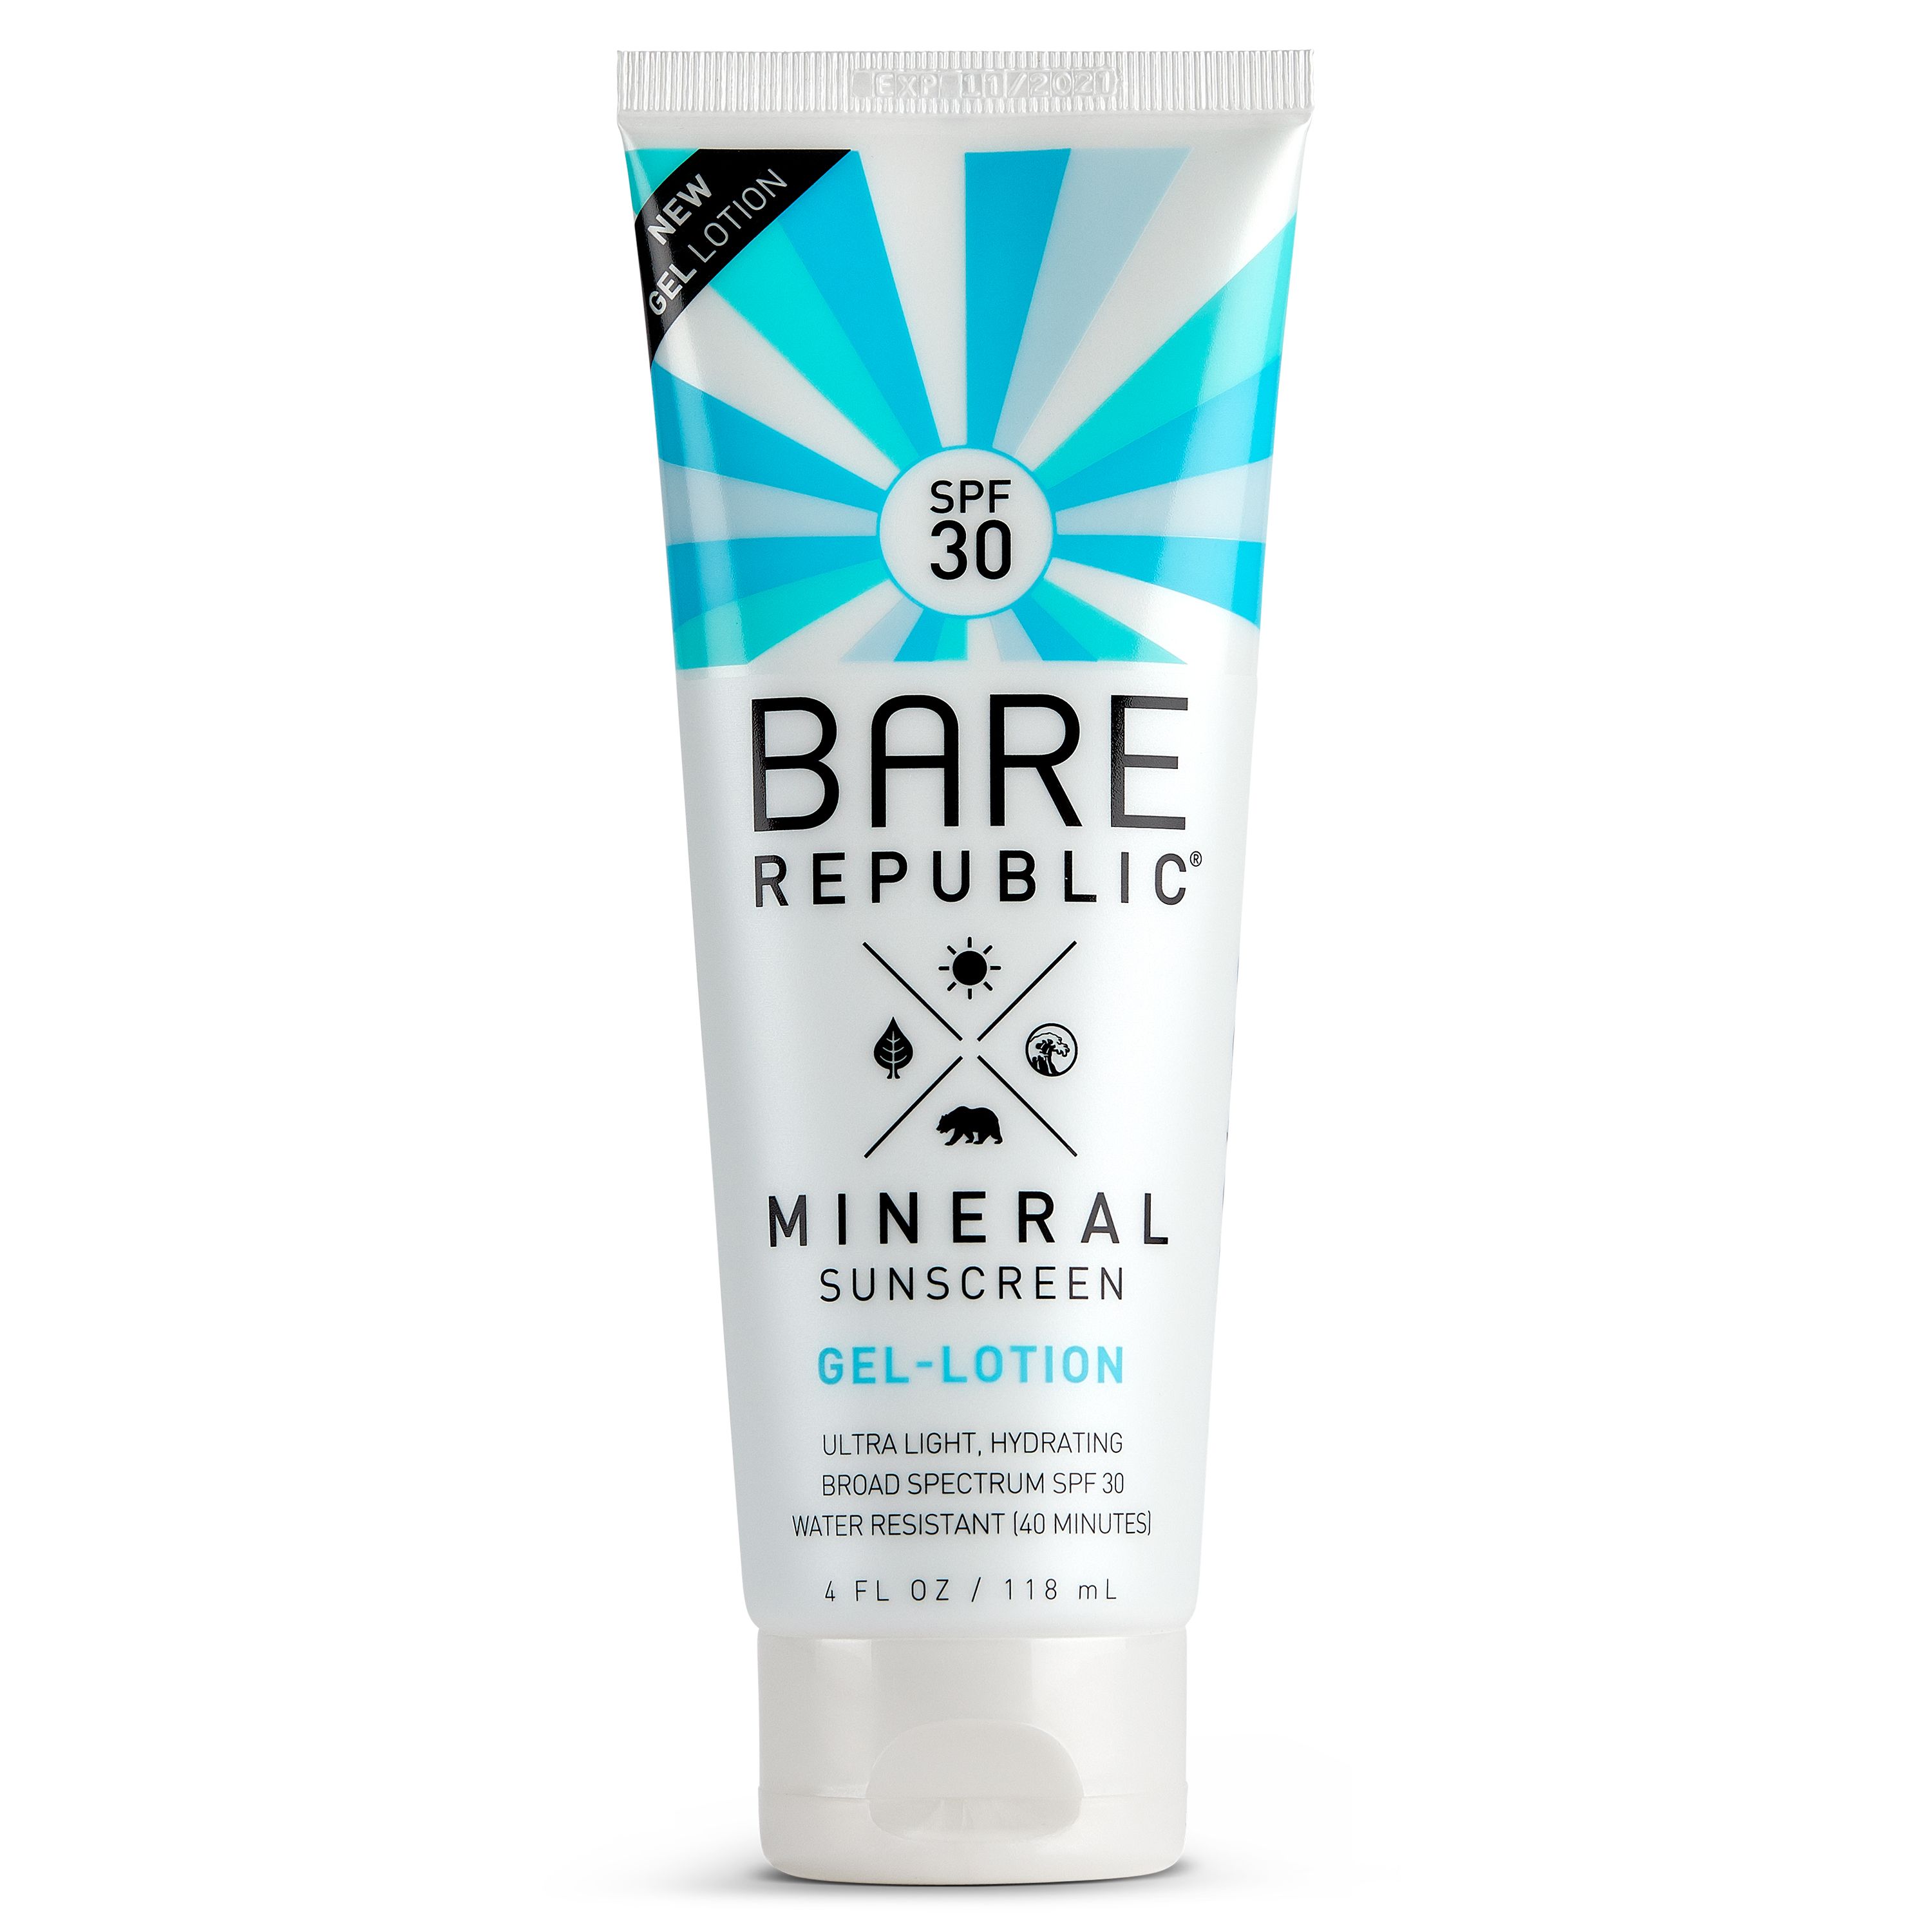 Bare Republic Mineral Sunscreen Gel Body Lotion, SPF 30 - 4 fl oz